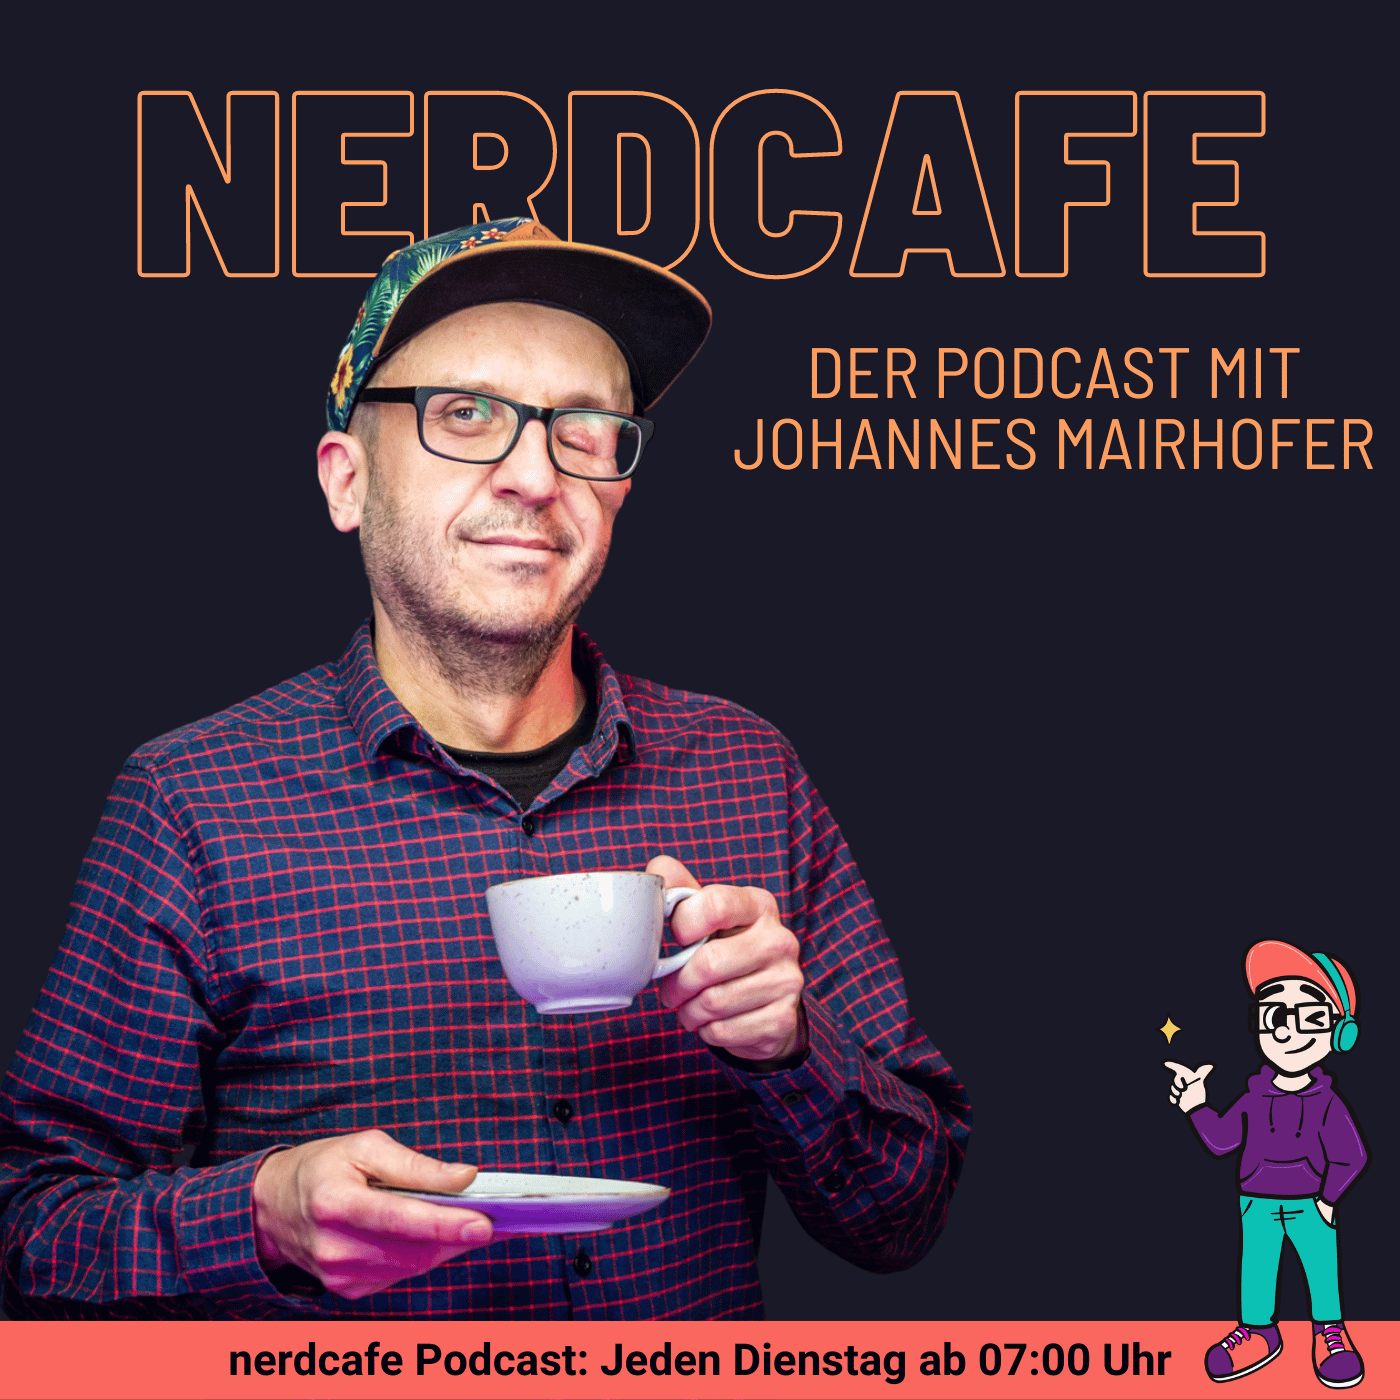 Cover nerdcafe Podcast mit Johannes und "nerdcafe - der Podcast mit Johannes Mairhofer" Text